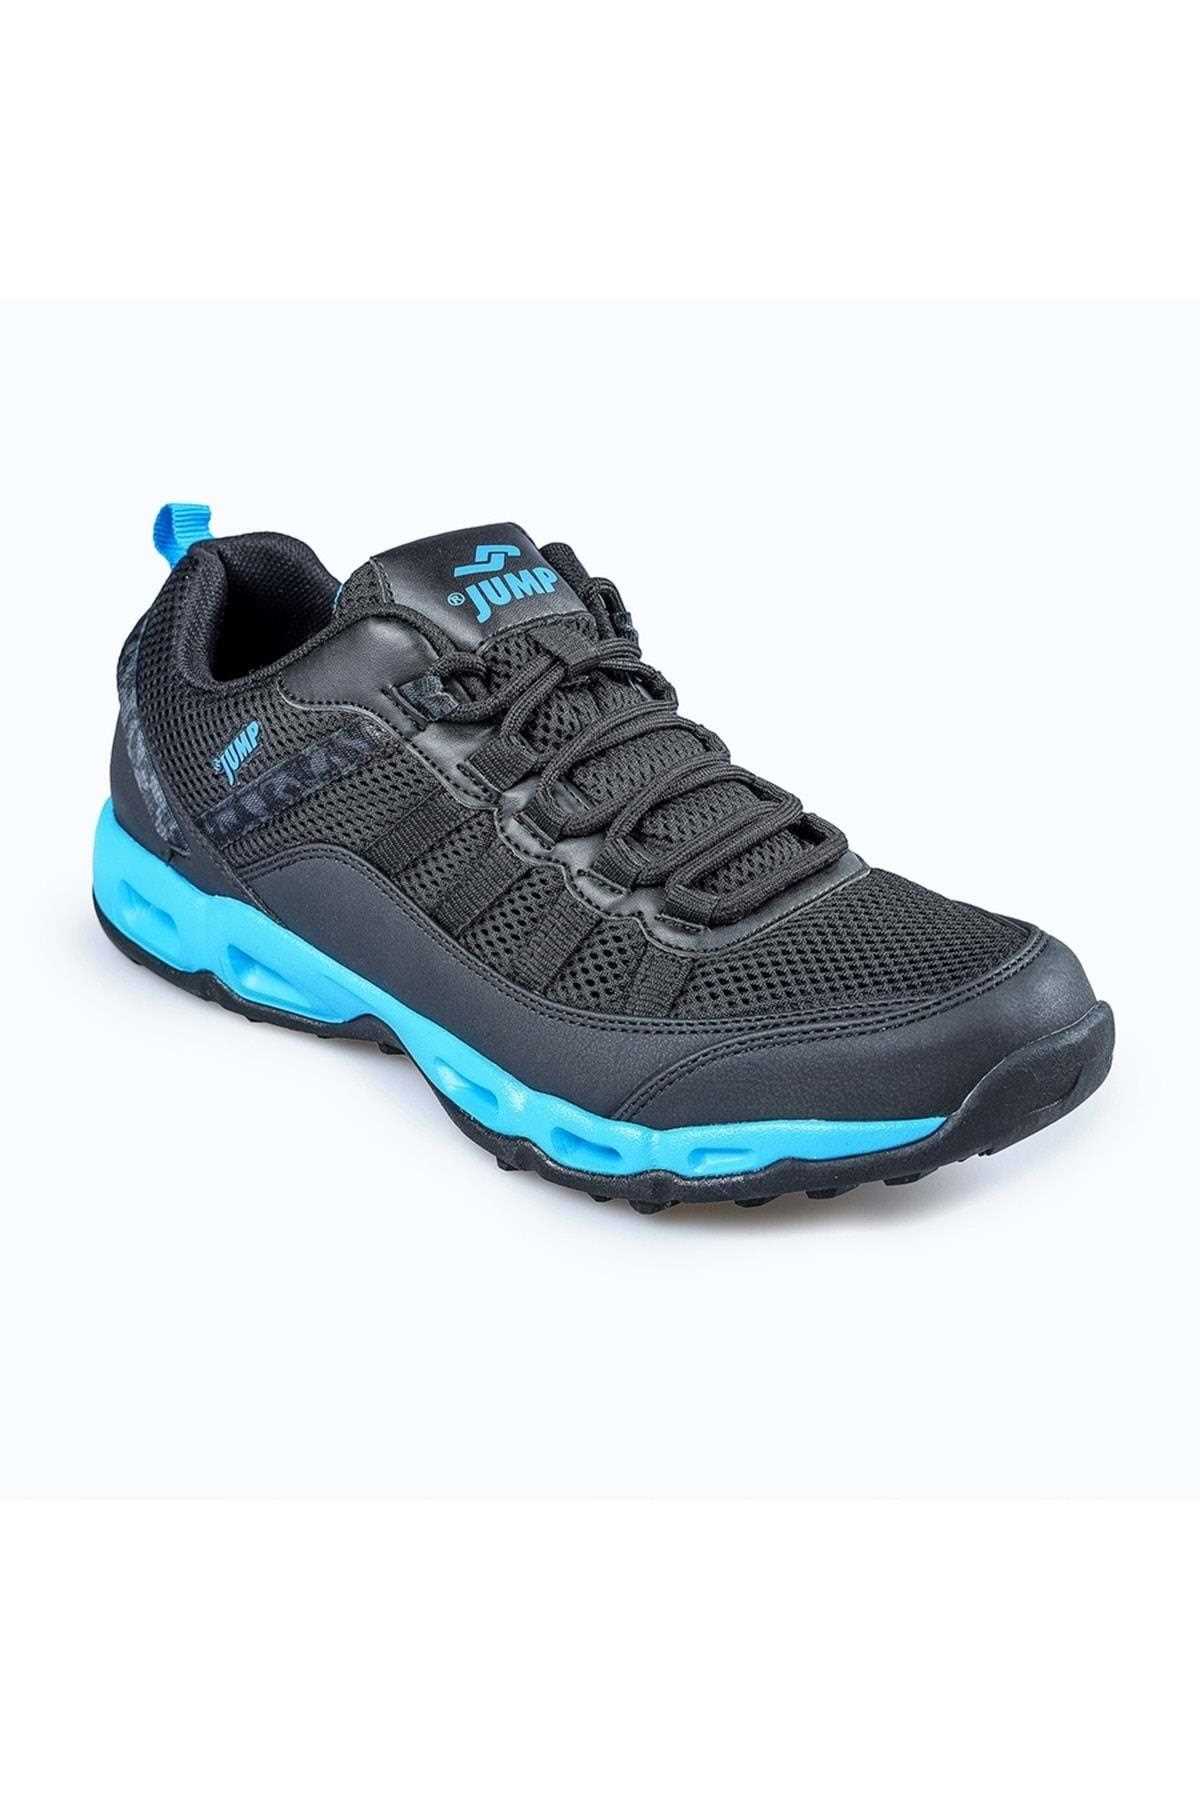 خرید کفش پیاده روی زنانه جدید برند Jump رنگ مشکی کد ty140882199